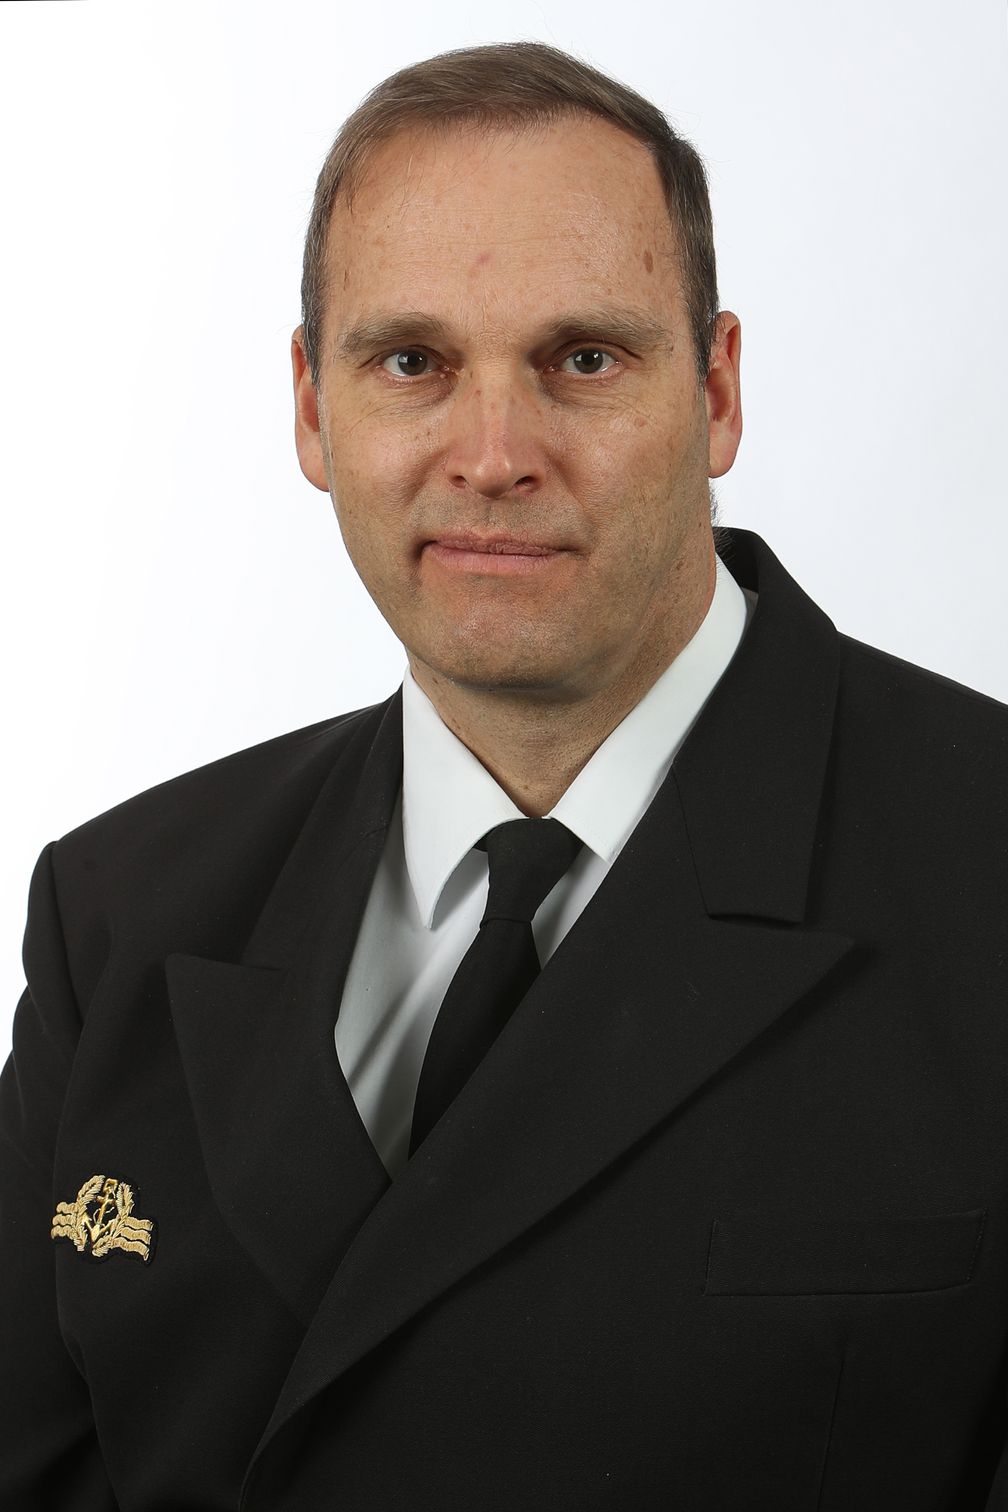 Der neue Kommandant der "Gorch Fock", Kapitän zur See Andreas-Peter Graf von Kielmansegg. Bild: Bundeswehr